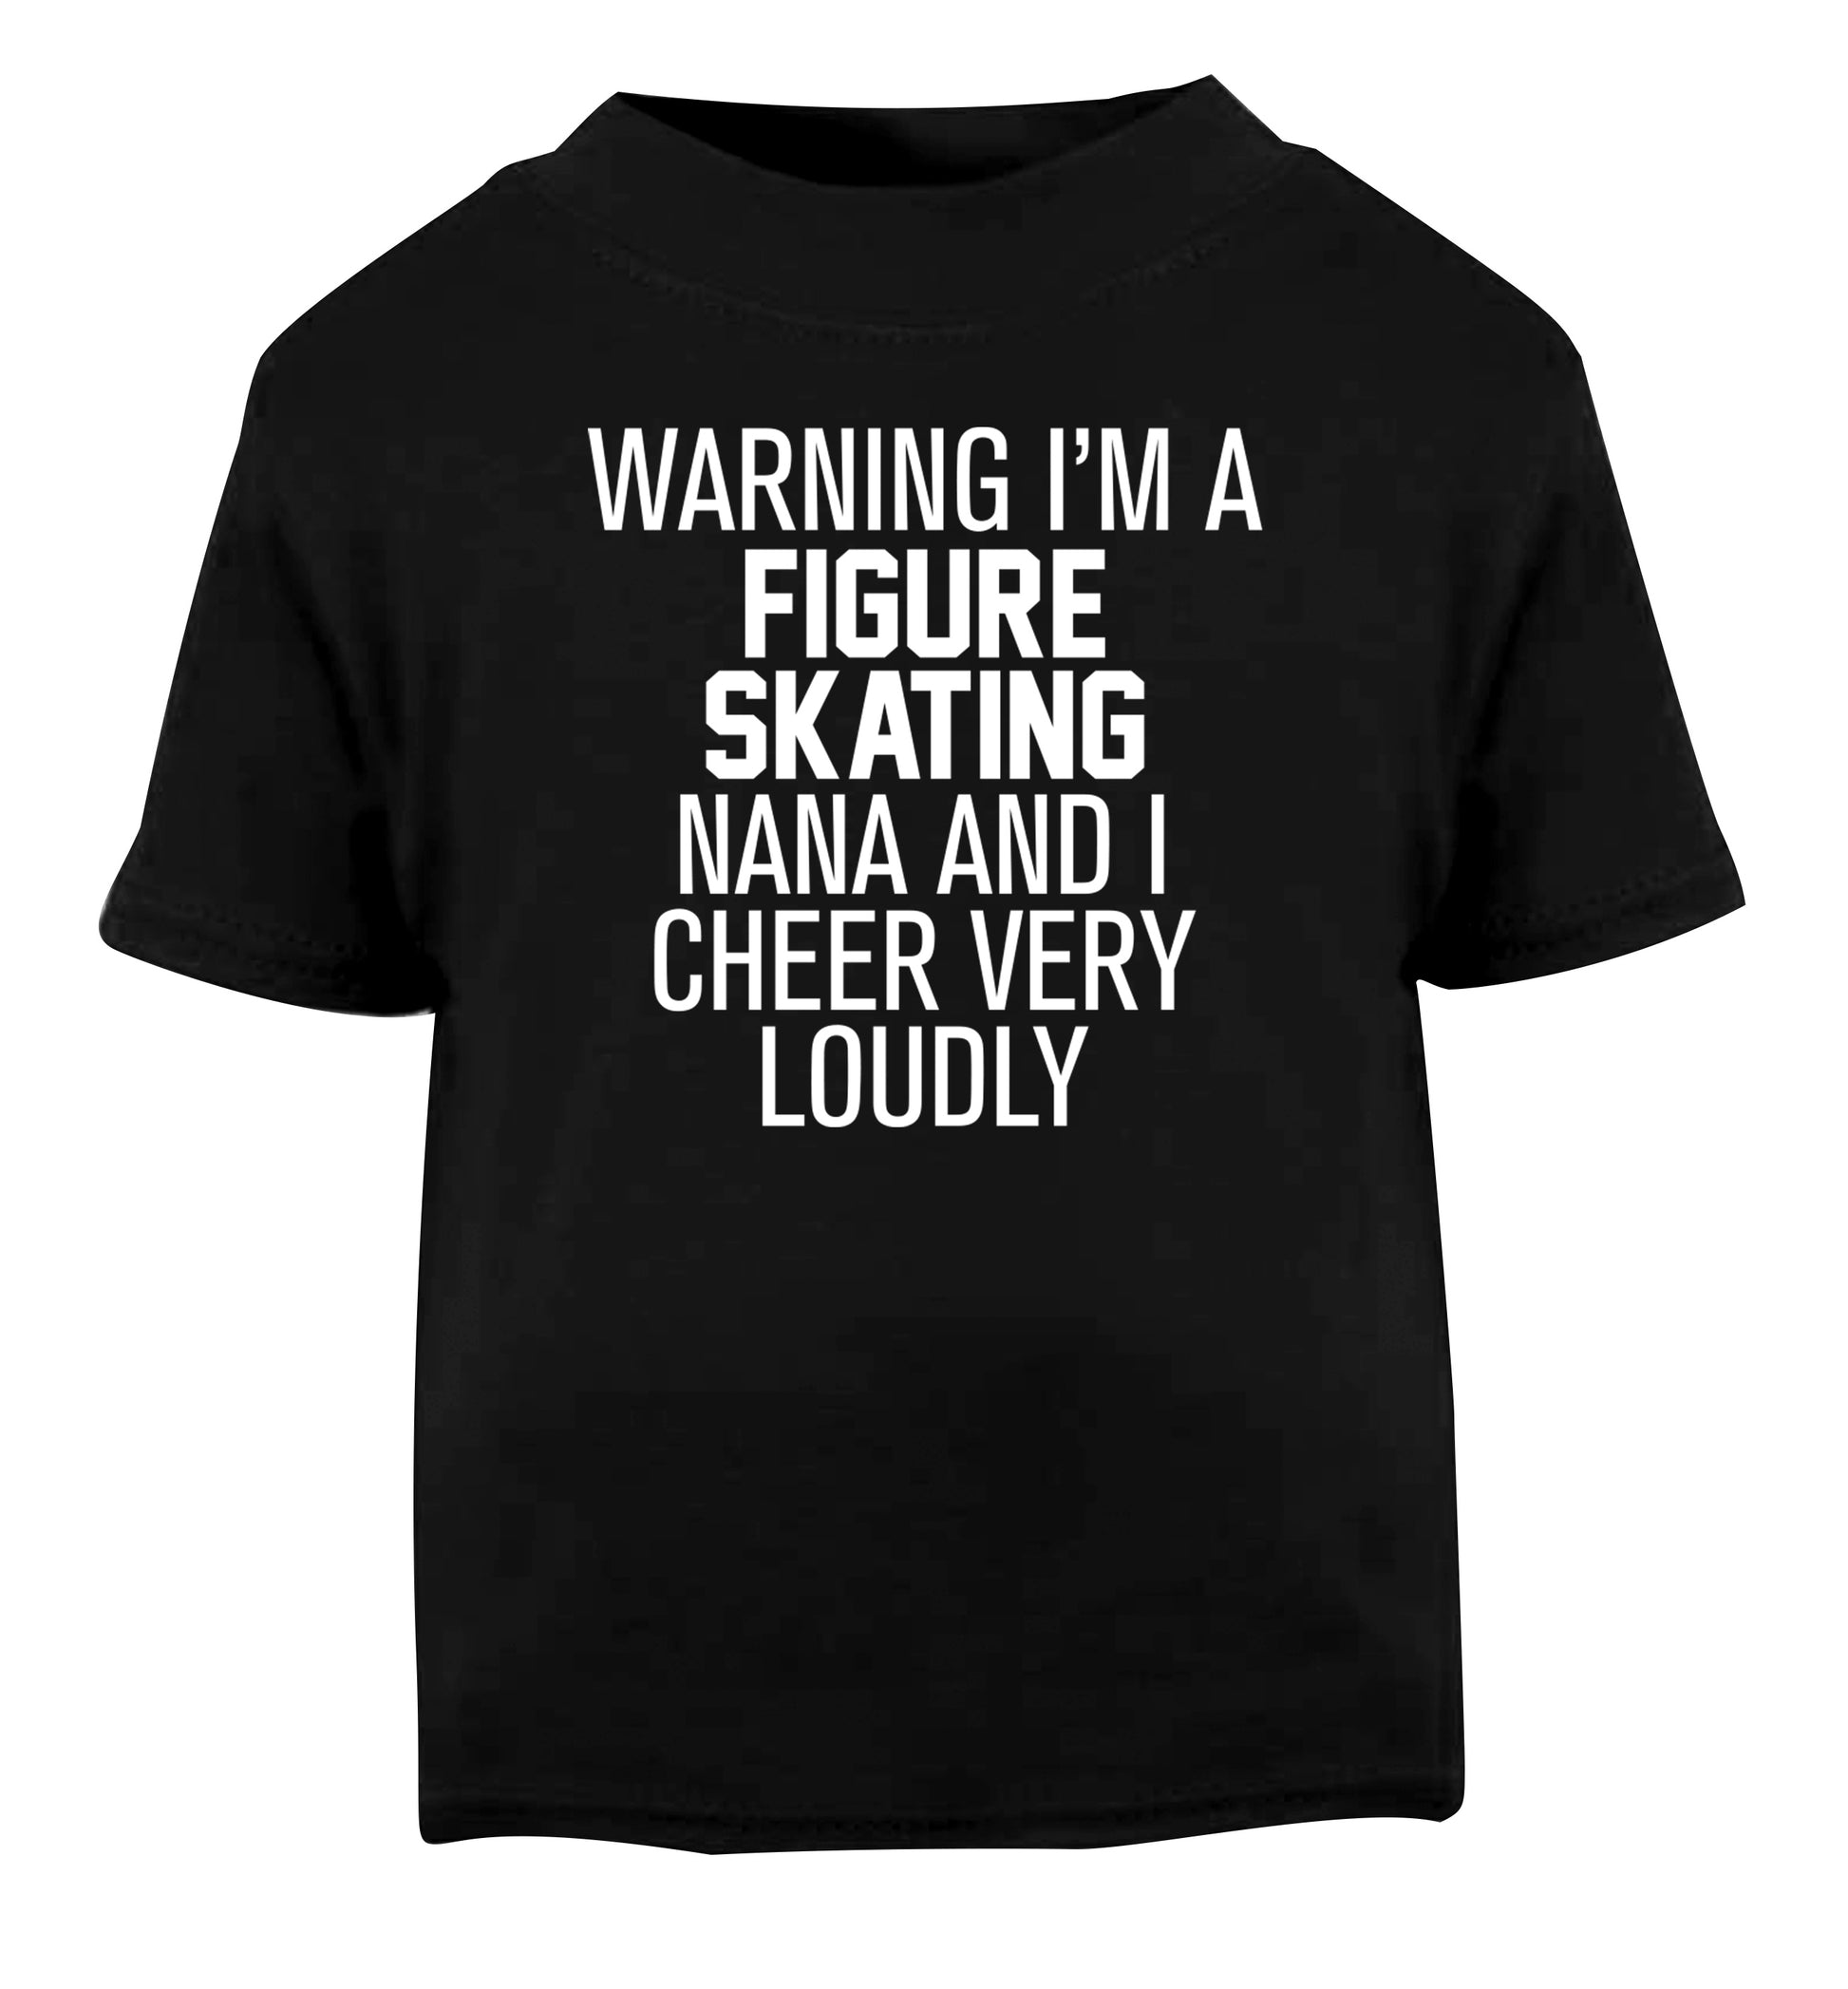 Warning I'm a figure skating nana and I cheer very loudly Black Baby Toddler Tshirt 2 years